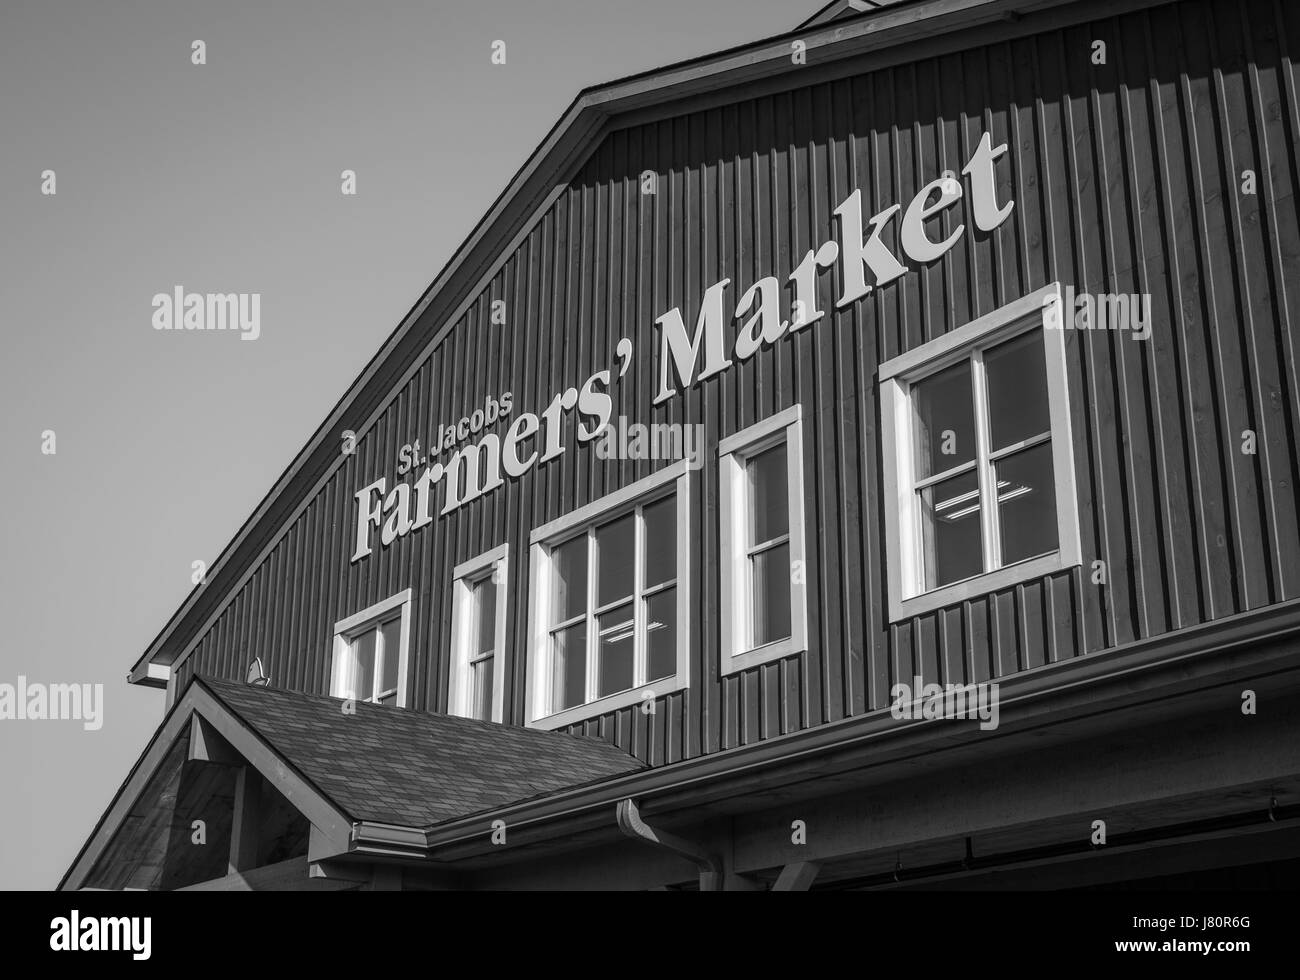 St. Jacobs Farmers' Market ist ein Wahrzeichen im südlichen Ontario. Viele Touristen machen dies zu einem jährlichen Ziel. Stockfoto